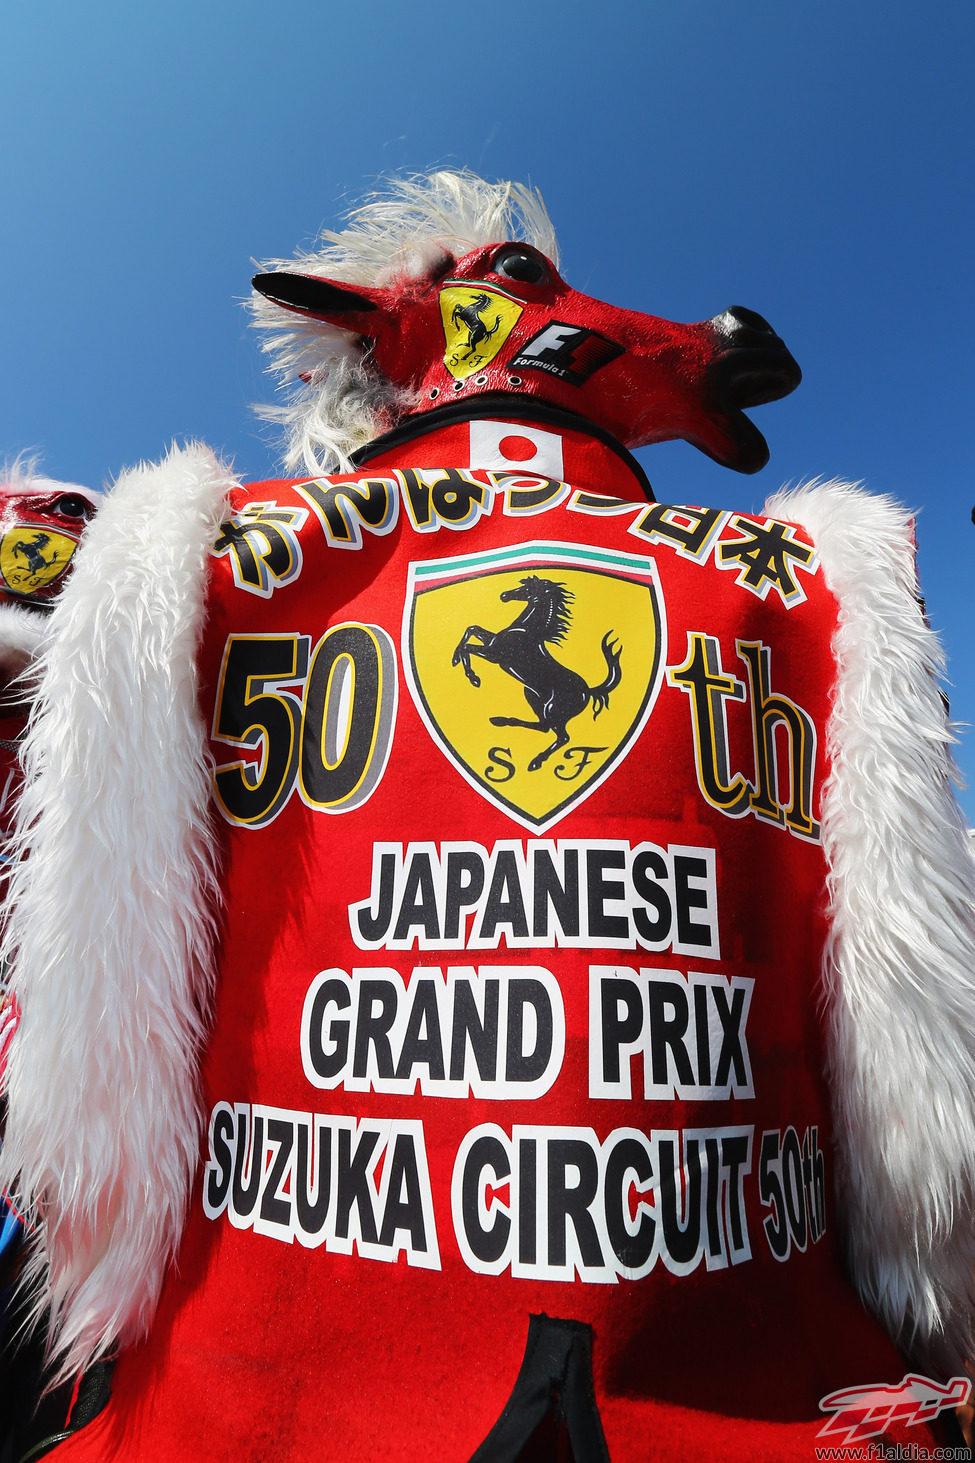 Ferrari muy presente en el circuito de Suzuka